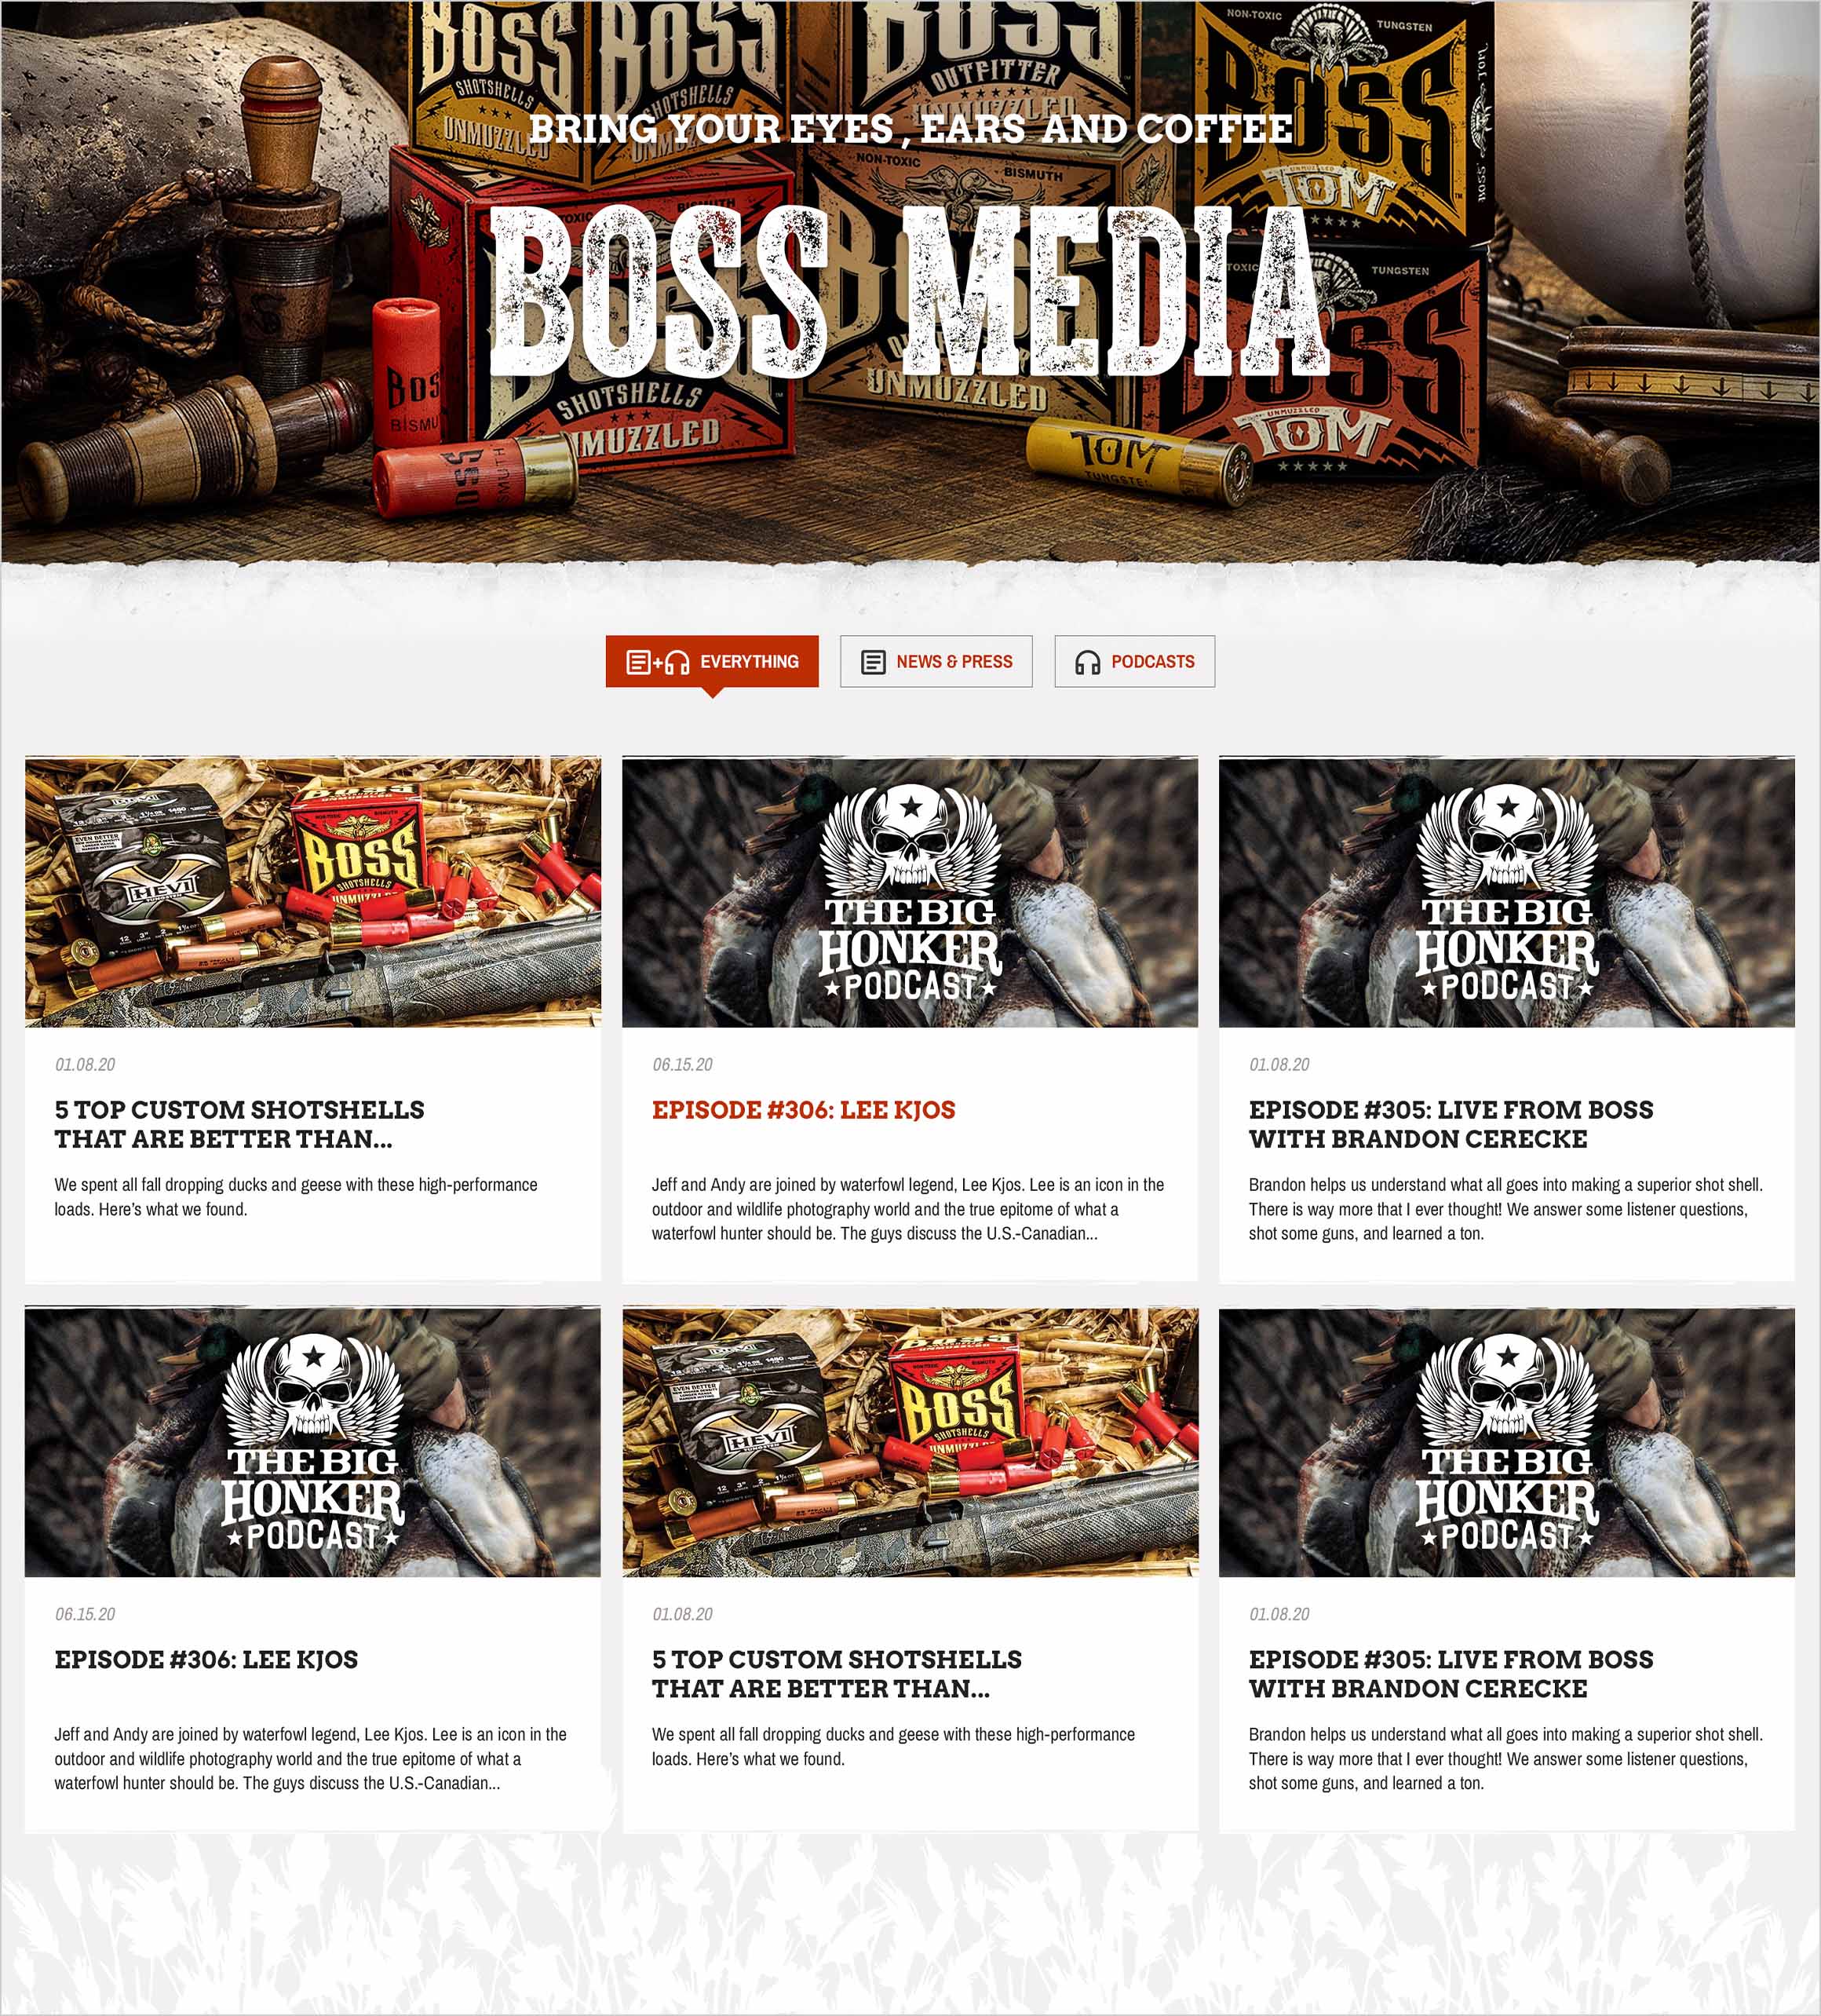 Boss Website Design